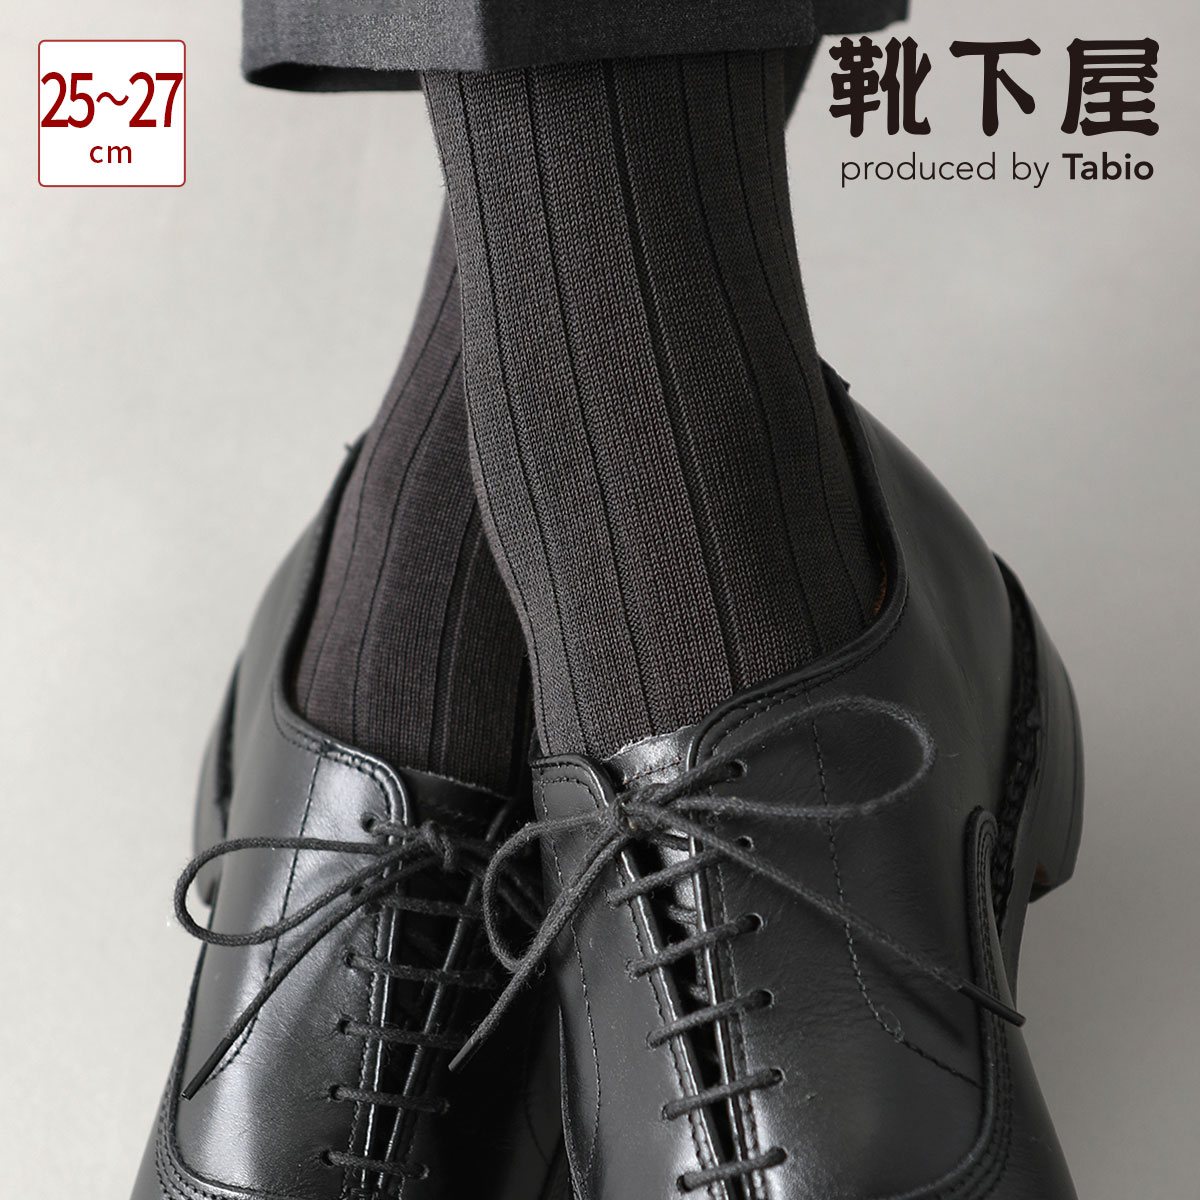  メンズ NEW 9×2太リブソックス   靴下屋 靴下 タビオ くつ下 ビジネス ソックス クルー ビジネスソックス 日本製